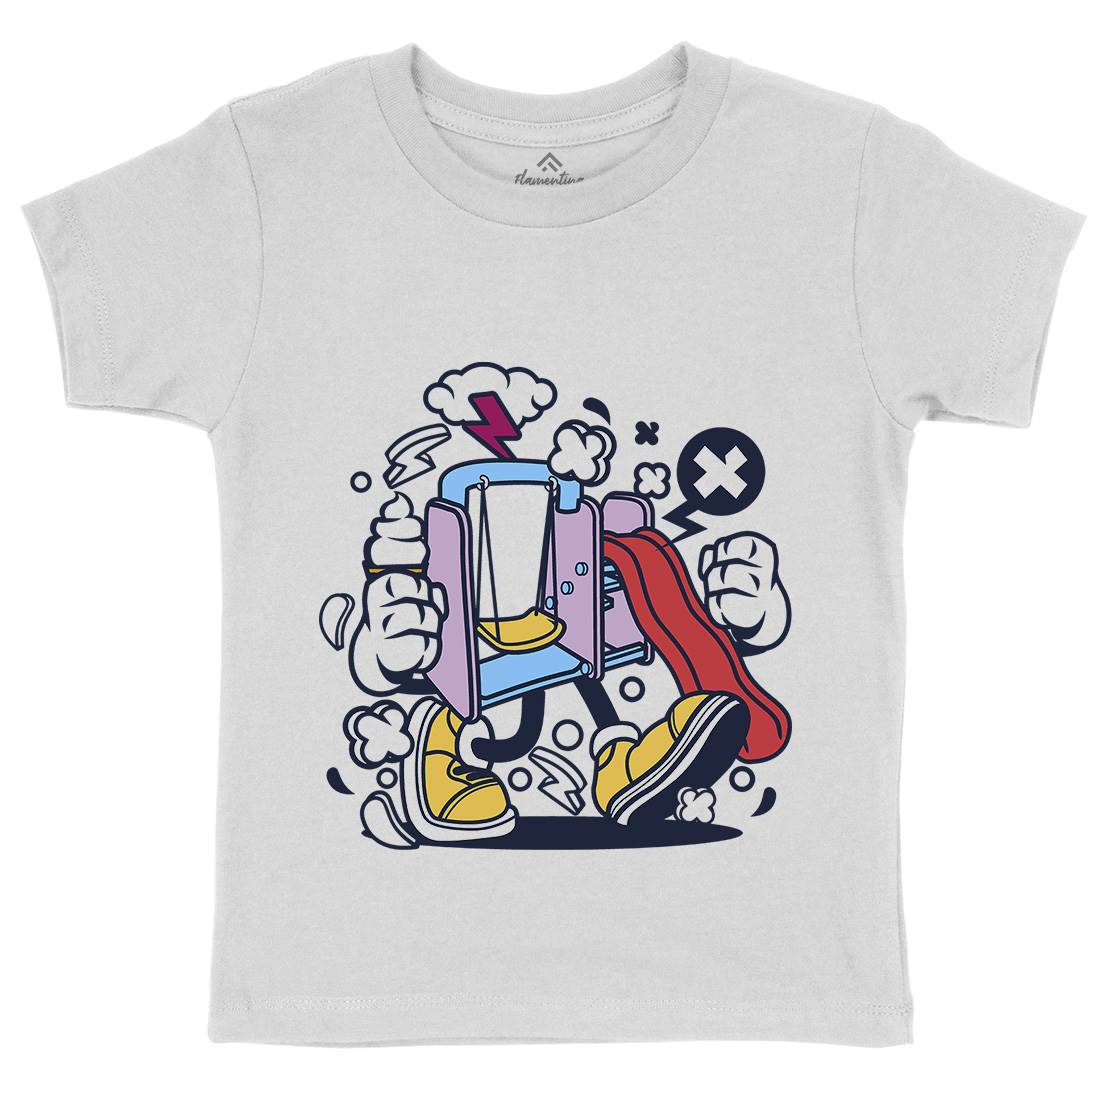 Playground Slide Kids Organic Crew Neck T-Shirt Retro C248